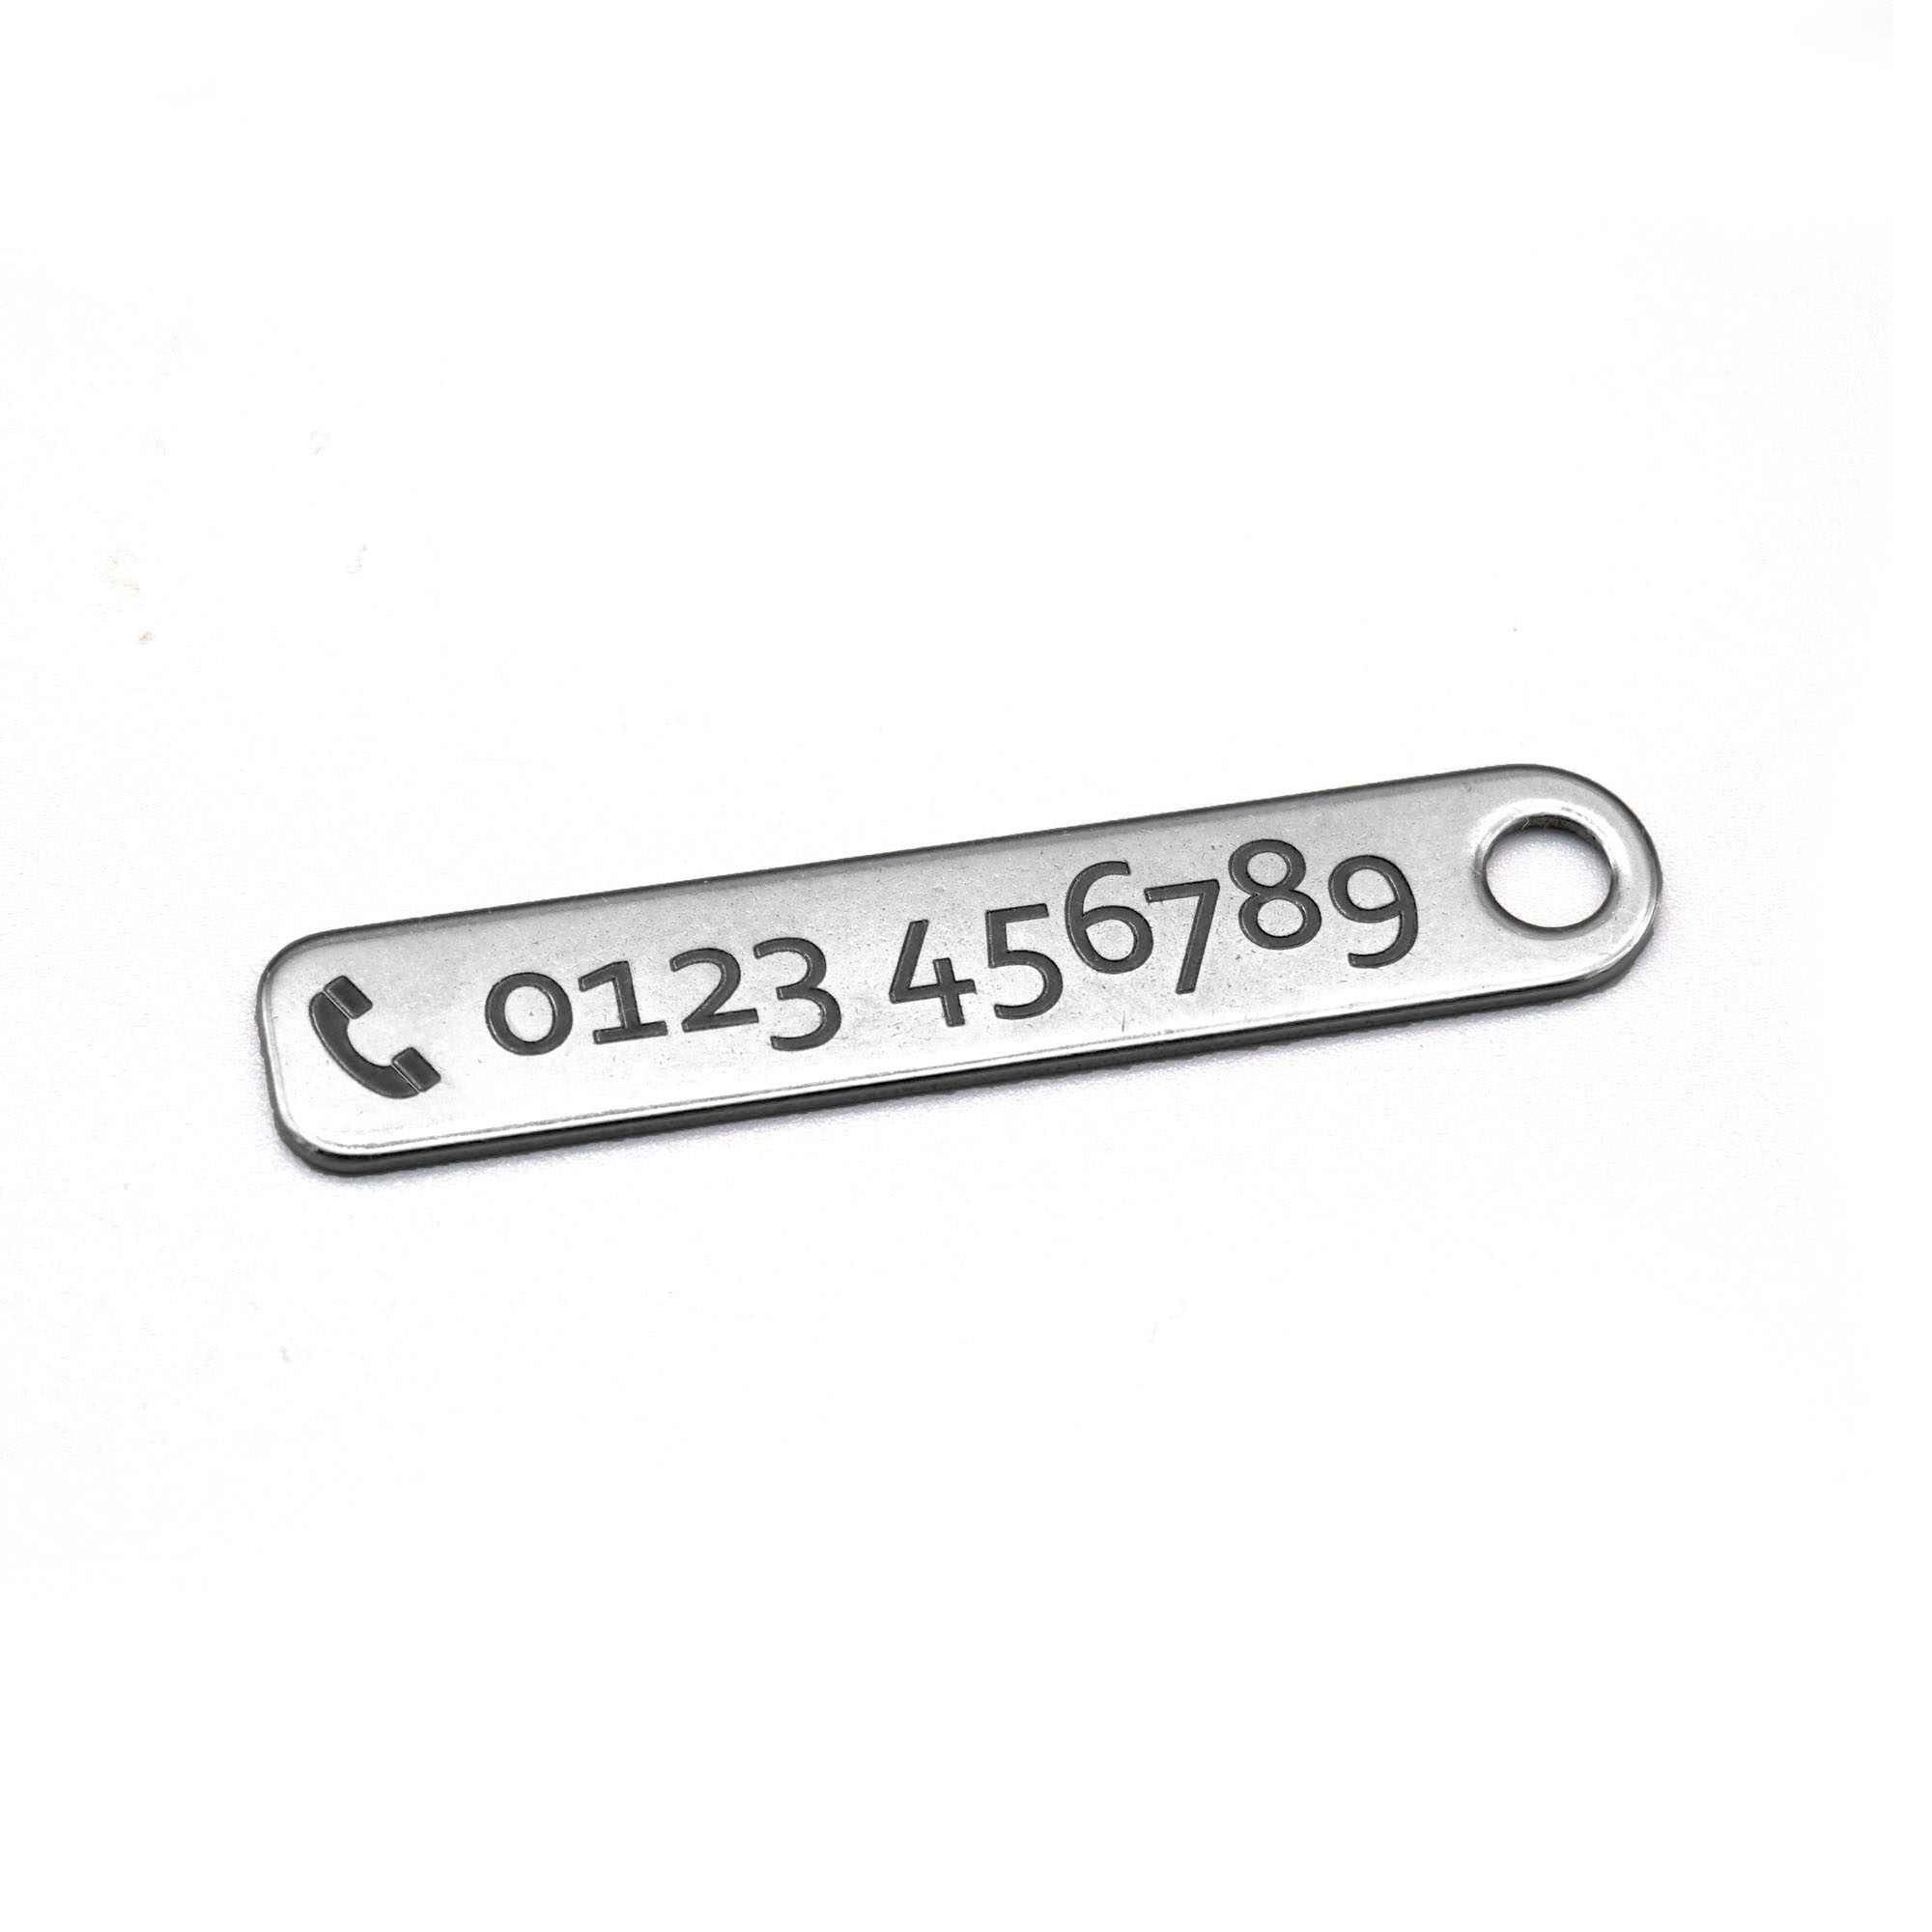 Edelstahl Schlüsselanhänger mit Telefonnummer - individuelle Gravur